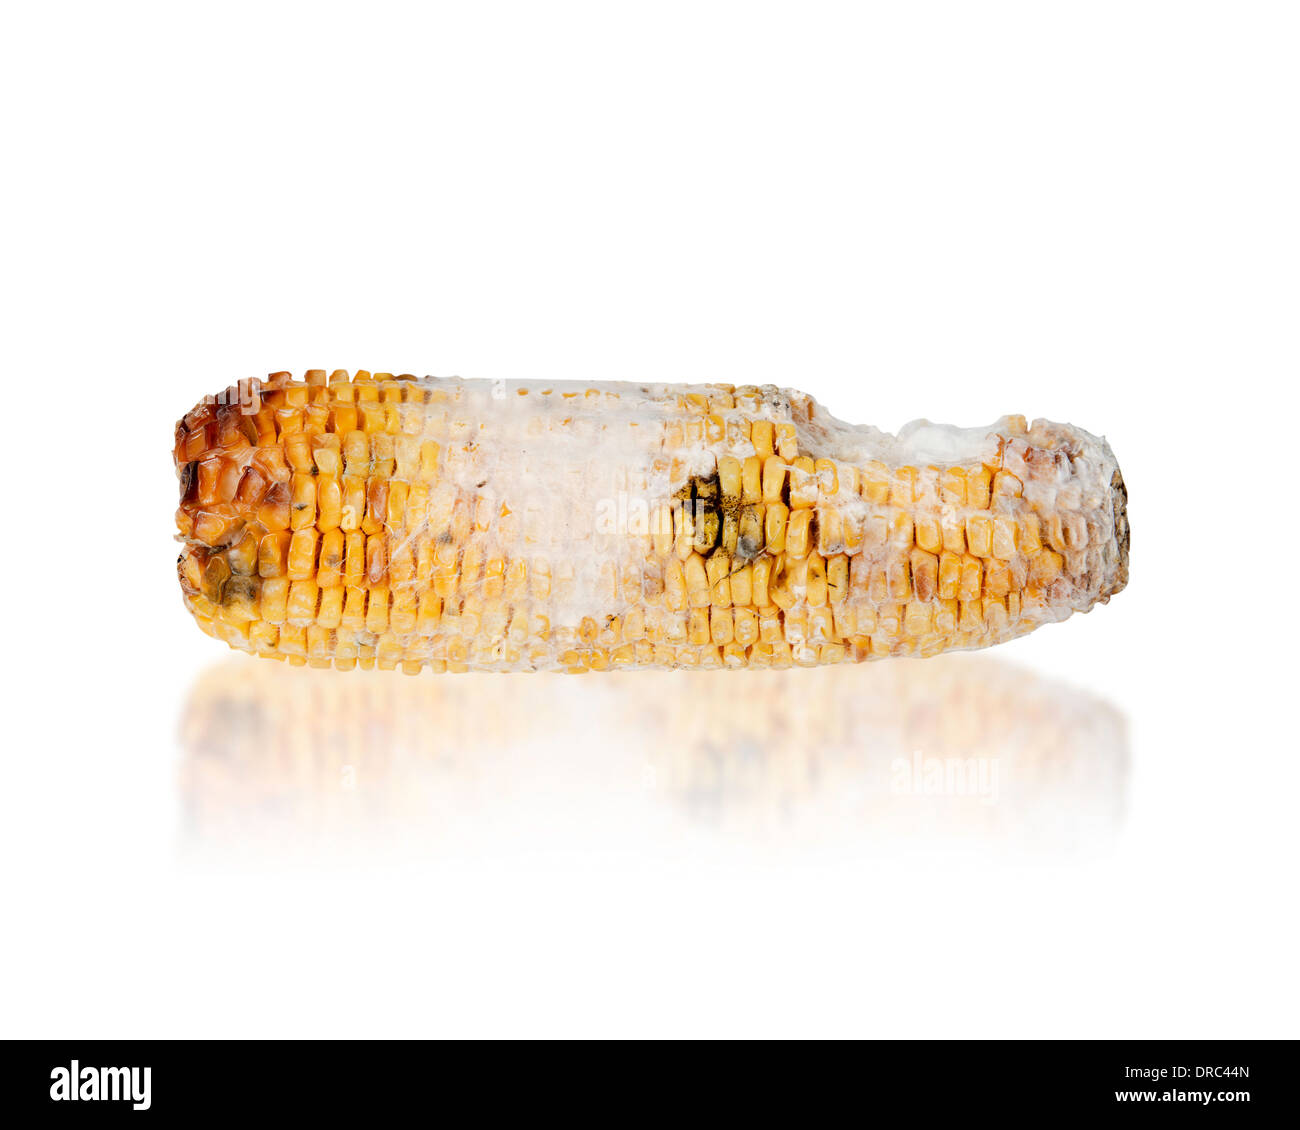 Maïs grillé pourri avec champignon isolé sur fond blanc Banque D'Images